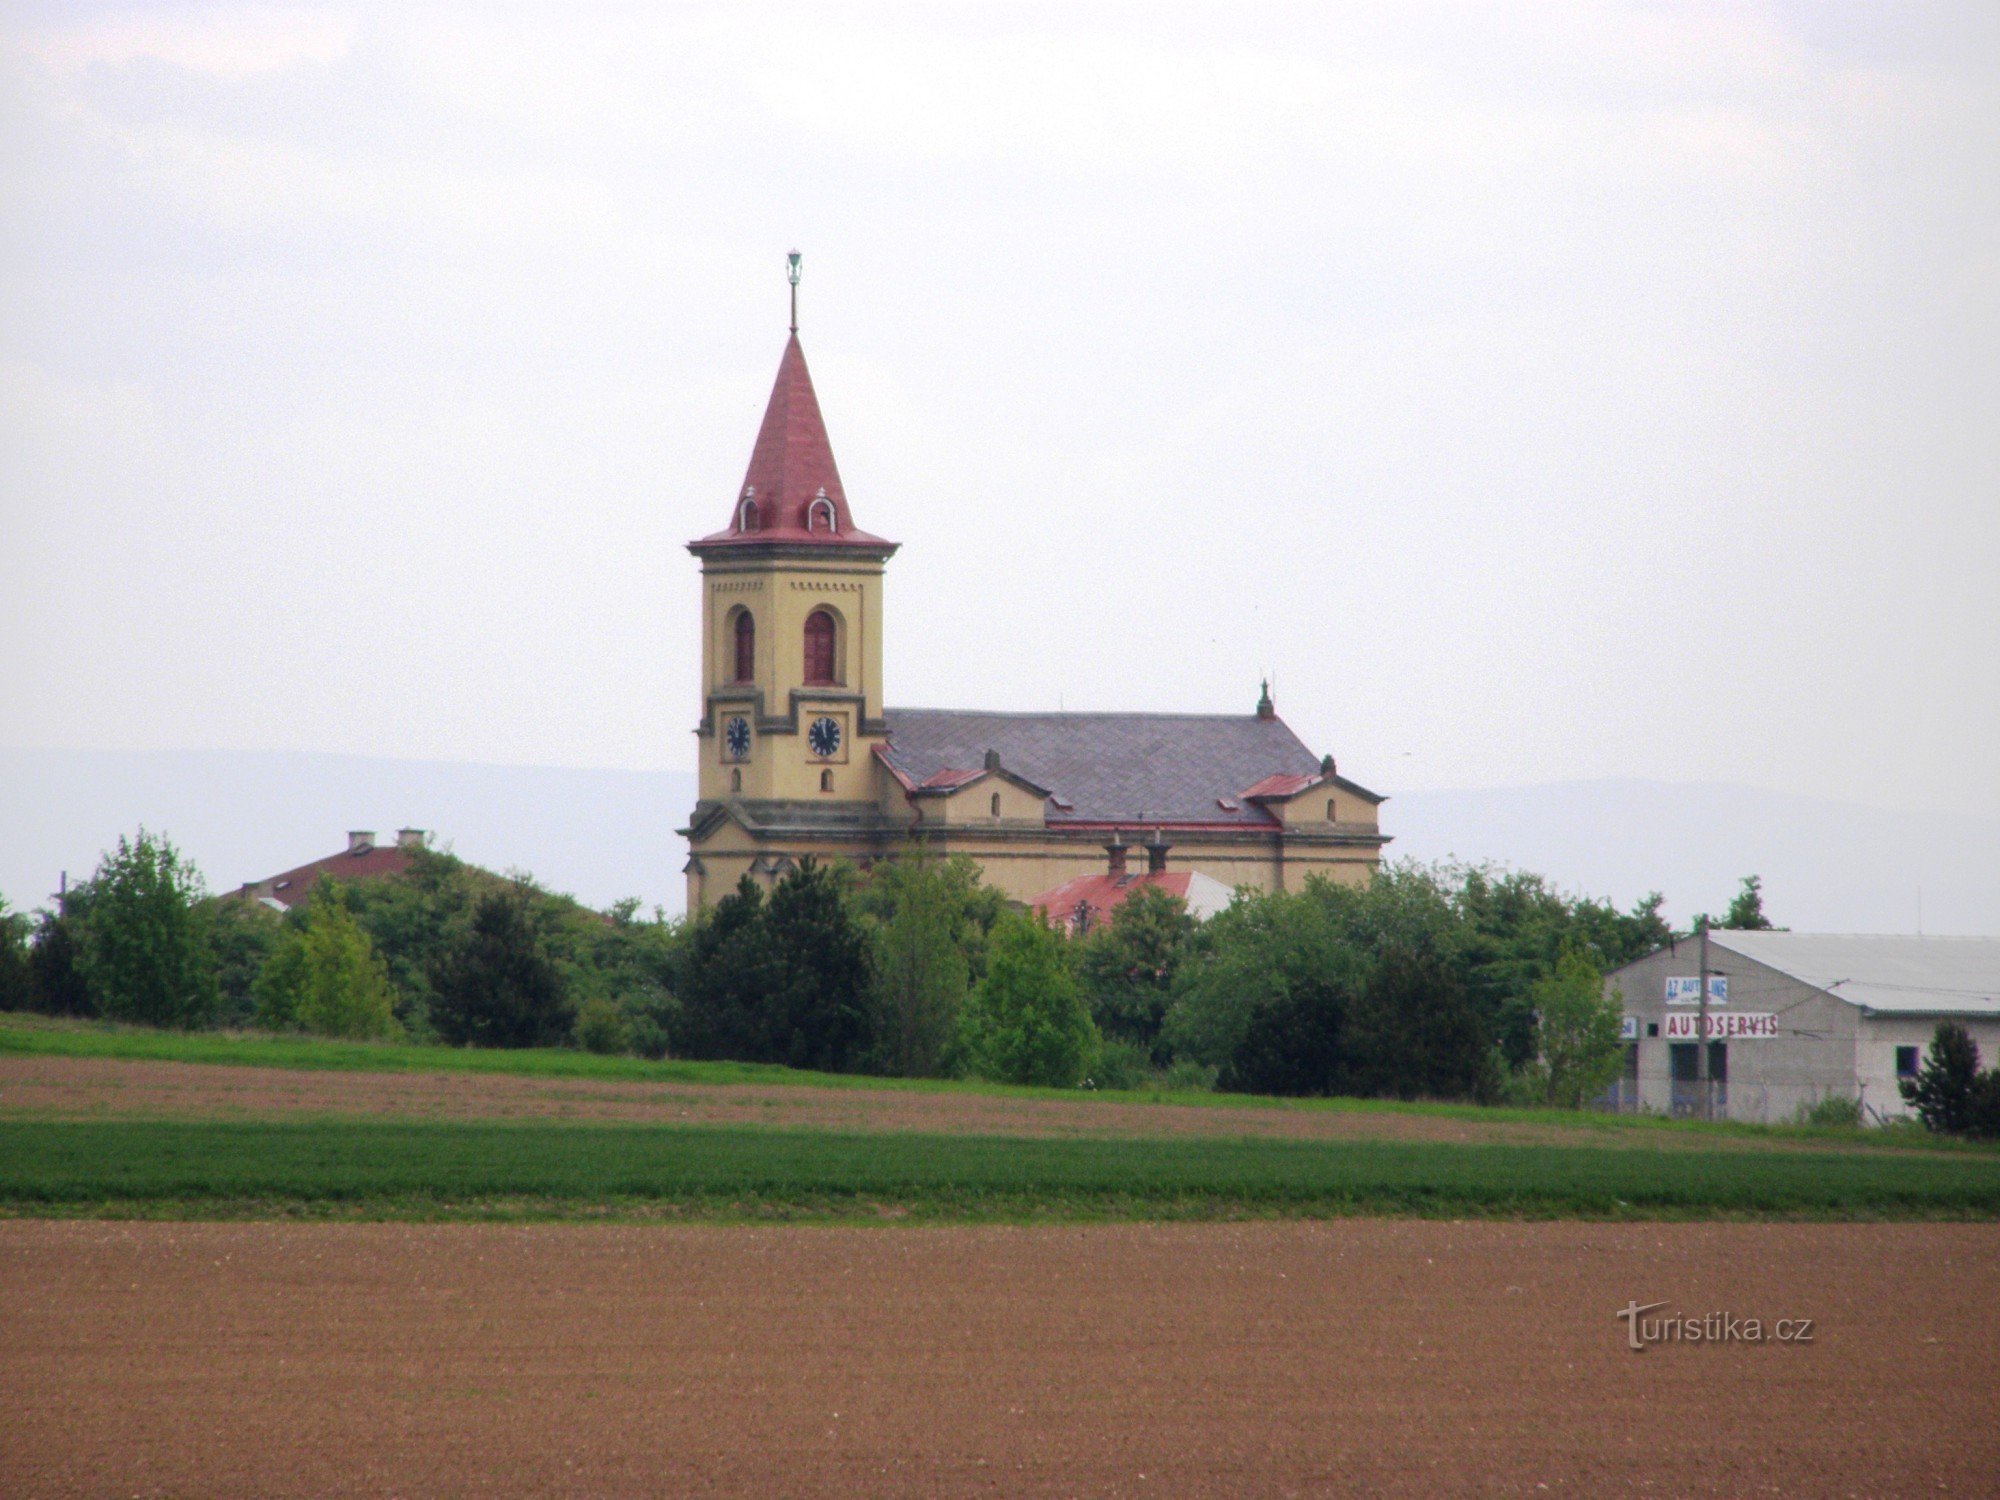 セモニケ - チェコ兄弟福音教会の教会